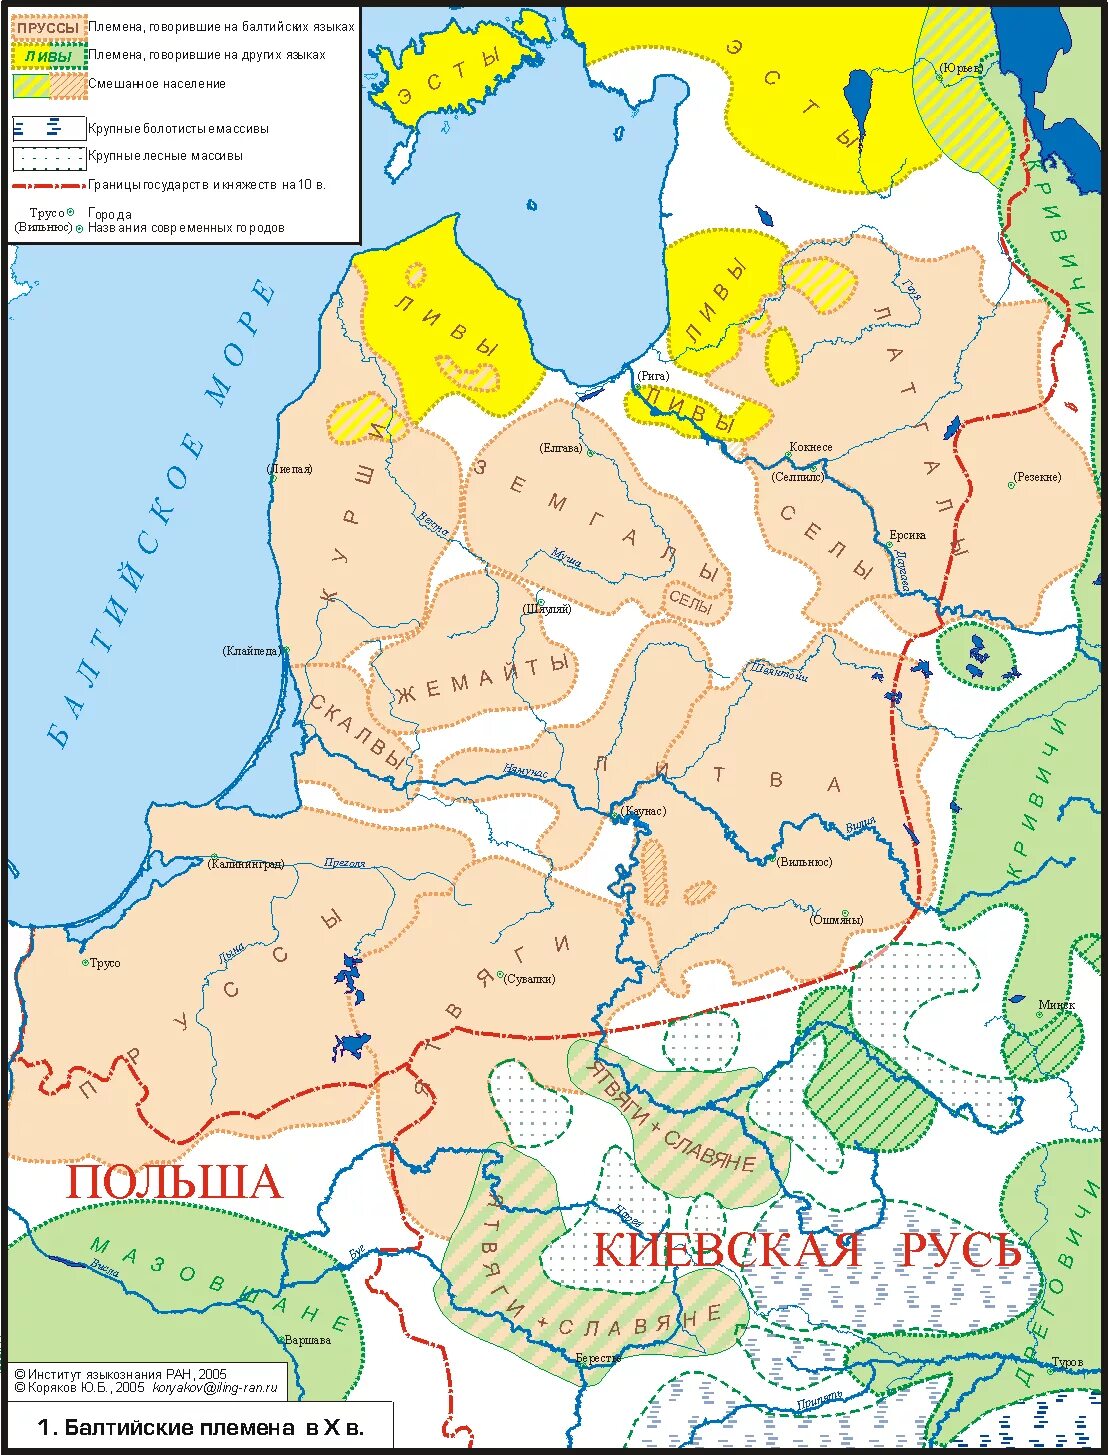 Ятвяги Пруссы. Литовские племена в 13 веке. Прибалтика в 10 веке. Карта прусских племен 13 век.